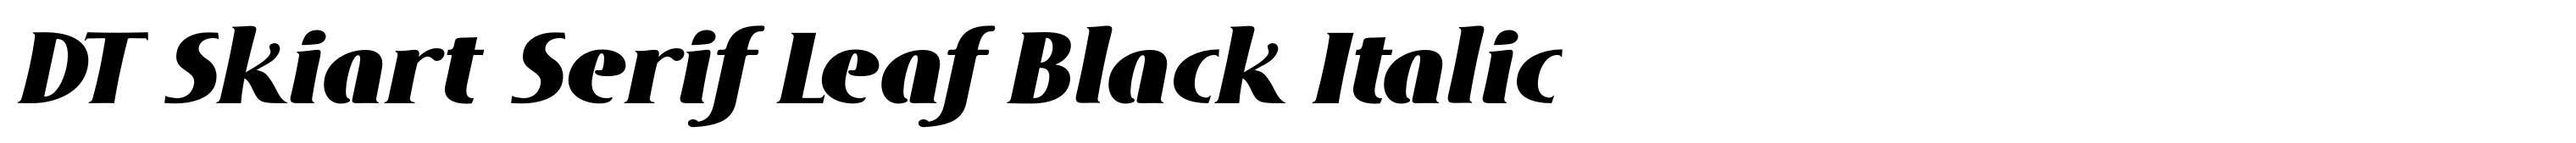 DT Skiart Serif Leaf Black Italic